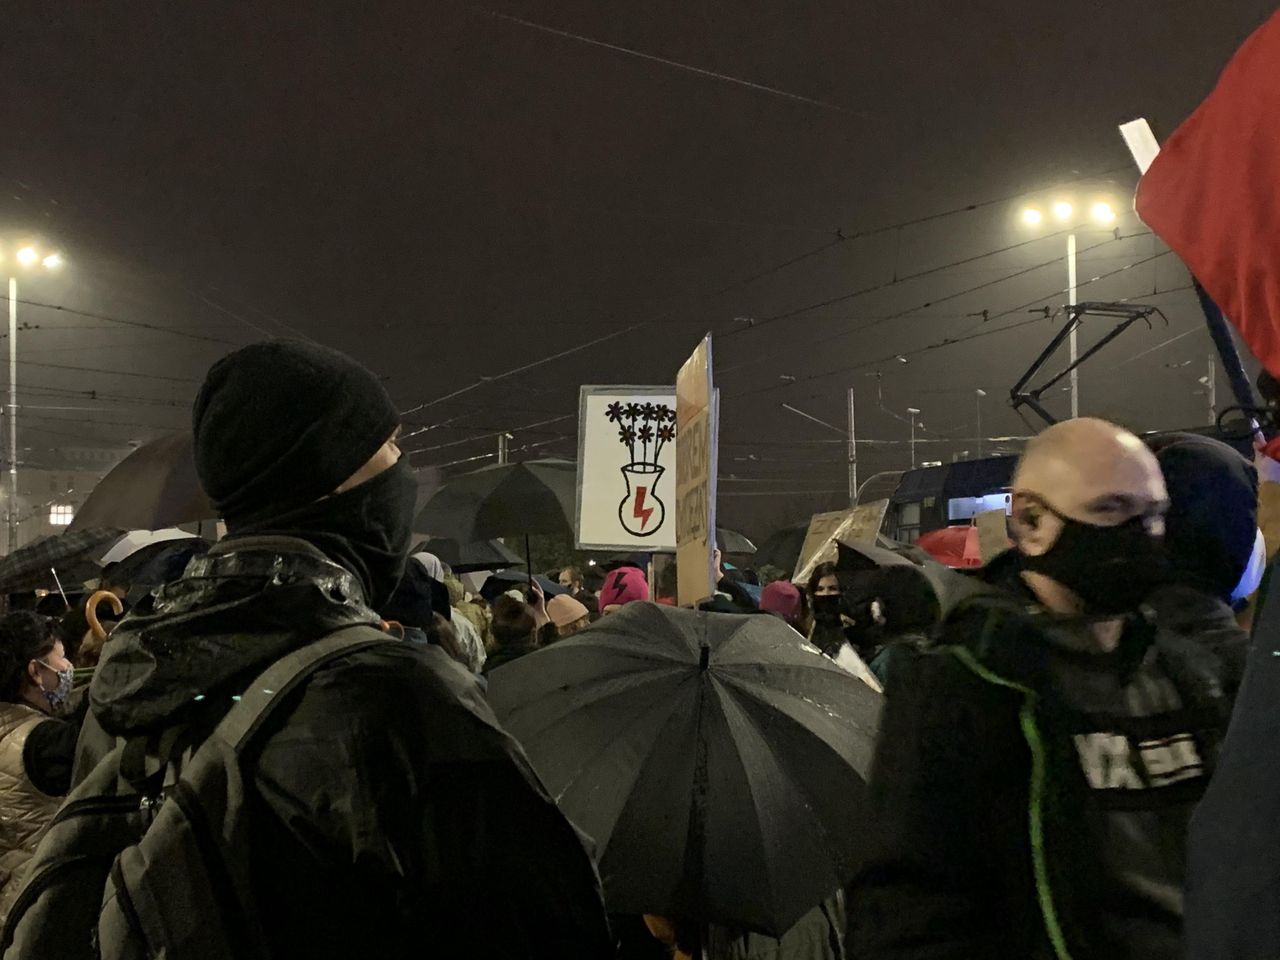 Strajk kobiet. Wrocław. Kilkaset osób na ulicach. "Przepraszamy, mamy rząd do obalenia"